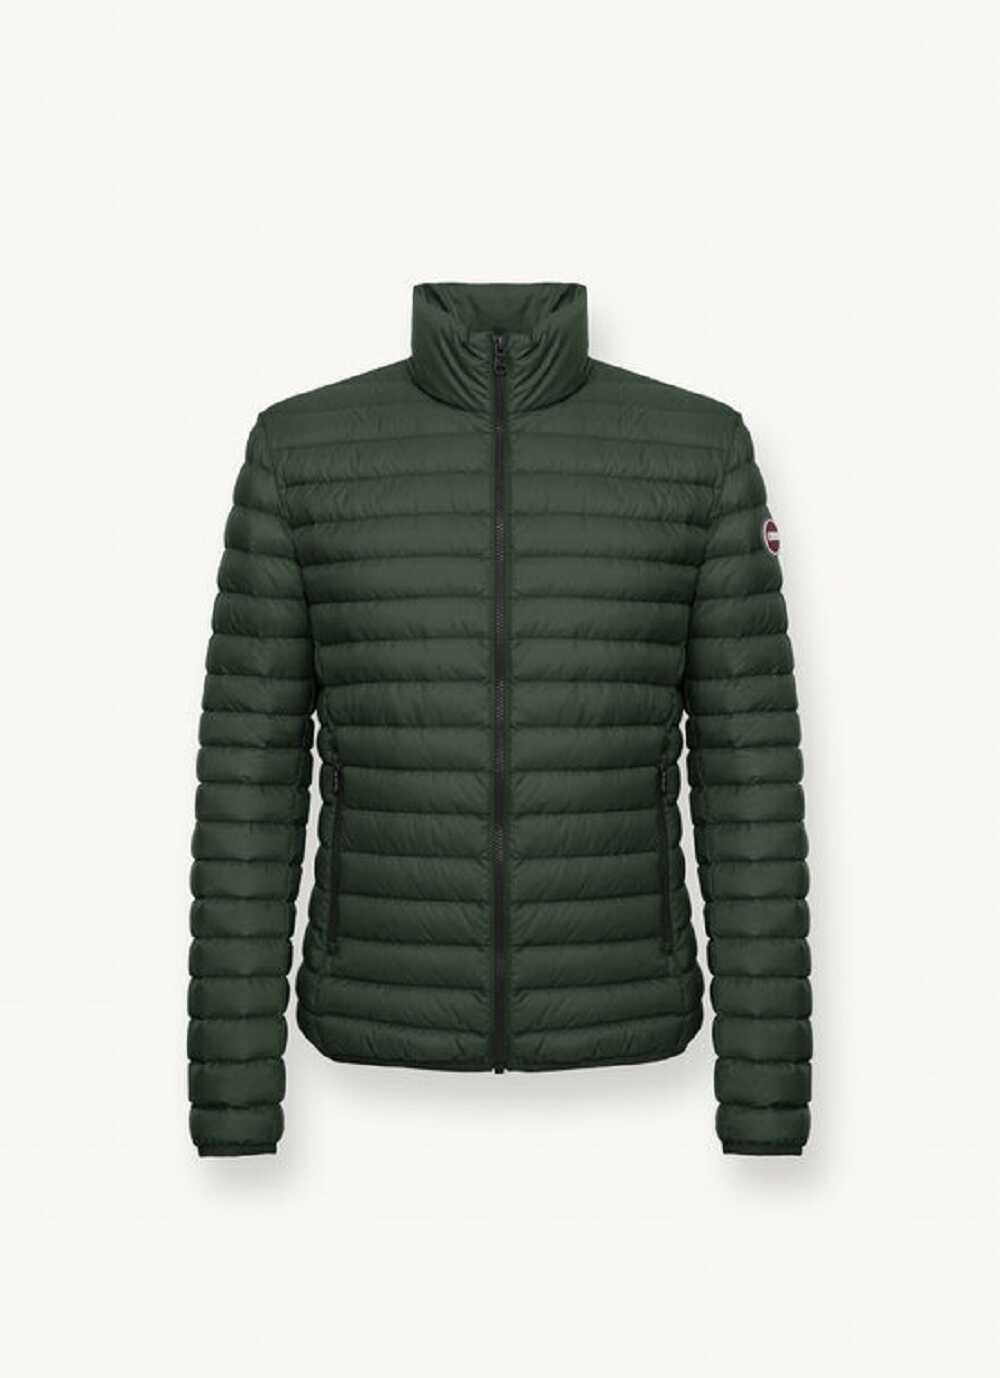 COLMAR ORIGINALS Jacket Green